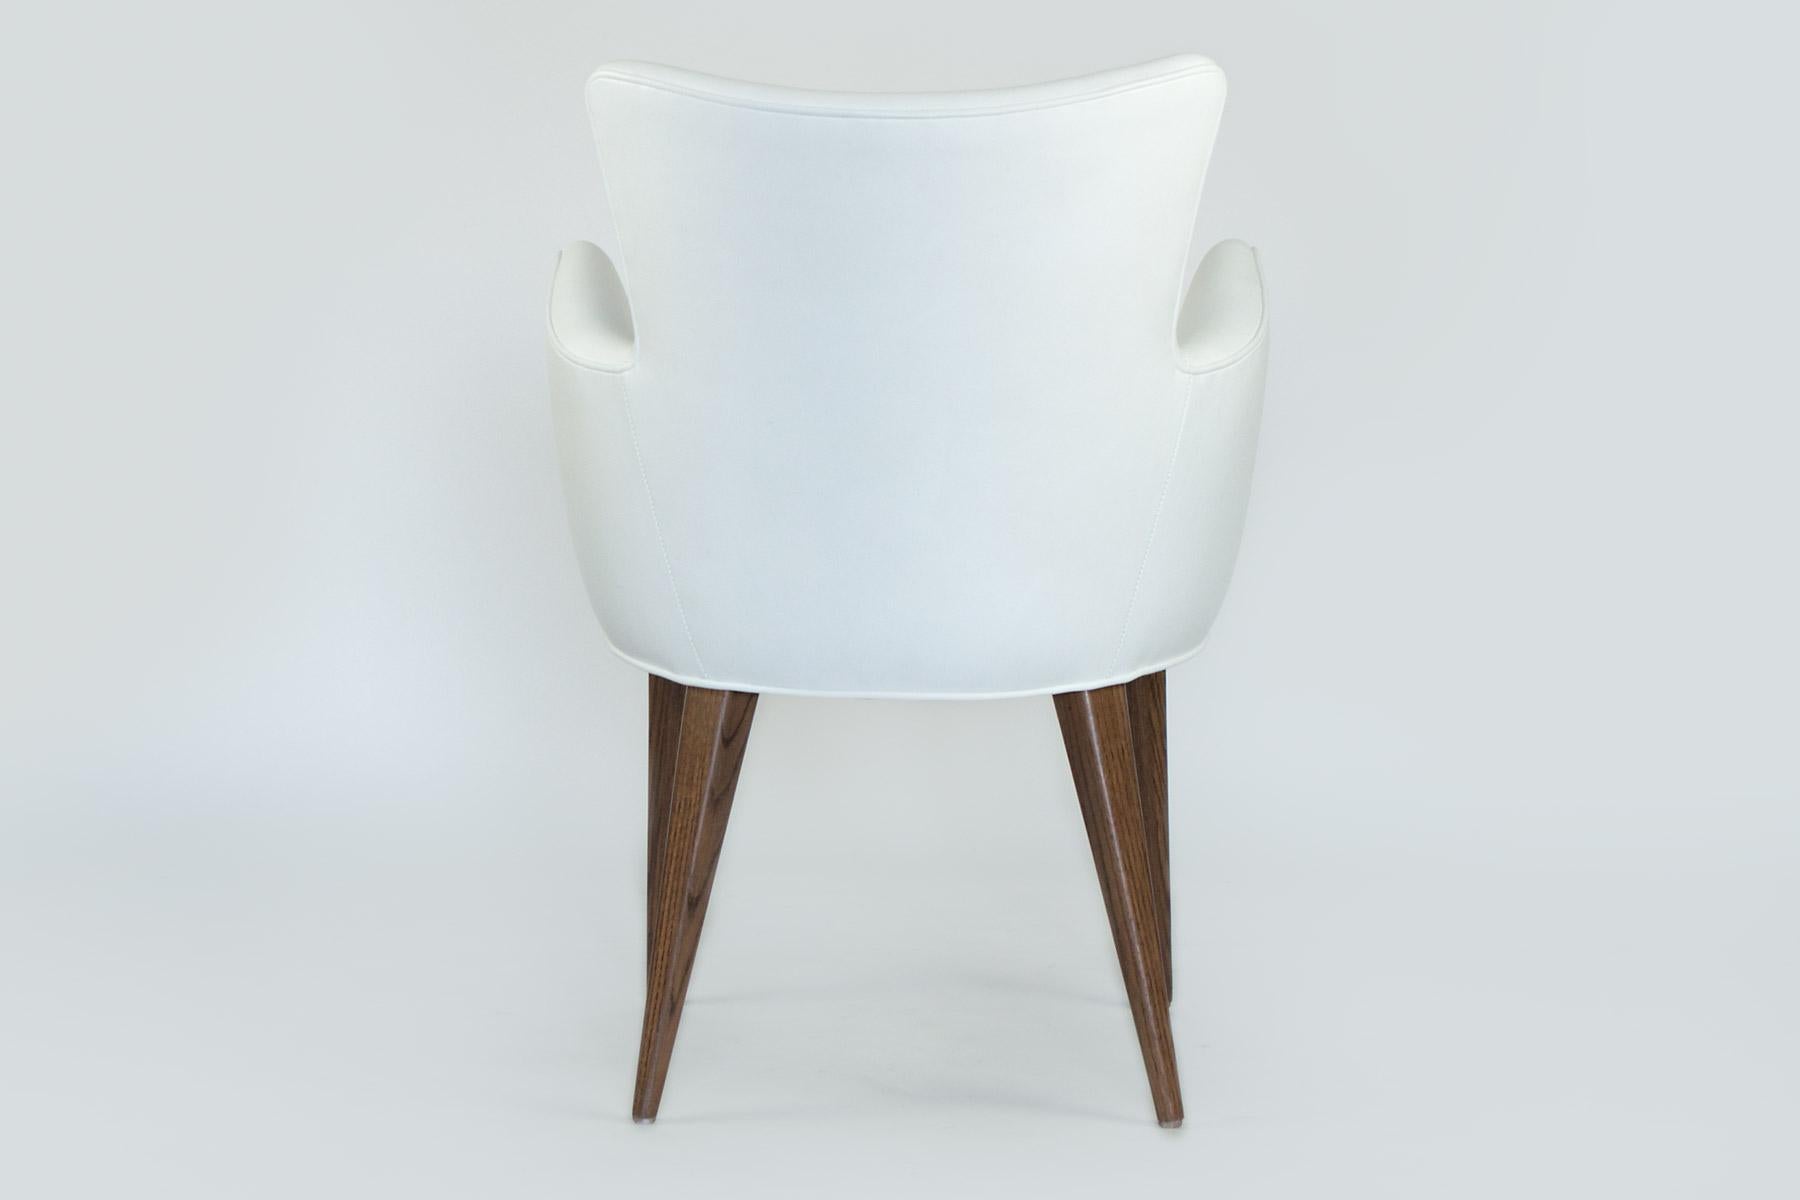 Cette chaise élégante peut être utilisée seule comme chaise d'appoint ou est parfaite dans la salle à manger. Ses lignes sont modernes, mais ses pieds en chêne s'harmonisent avec tous les meubles en bois. Le cadre incurvé vous entoure